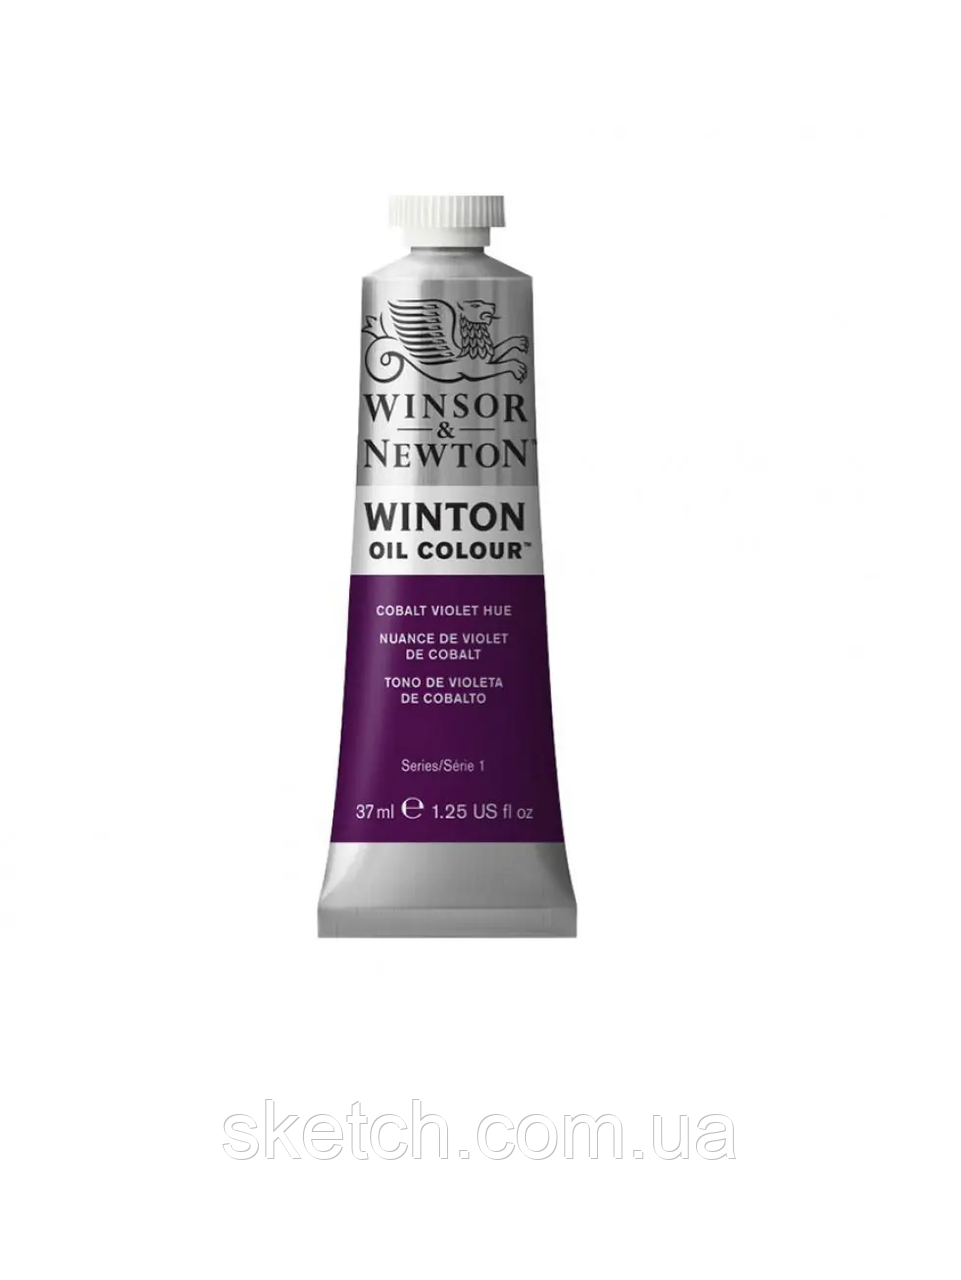 Олійна фарба WINSOR & NEWTON Winton Oil Colour, №194 Кобальт фіолетовий, 37мл